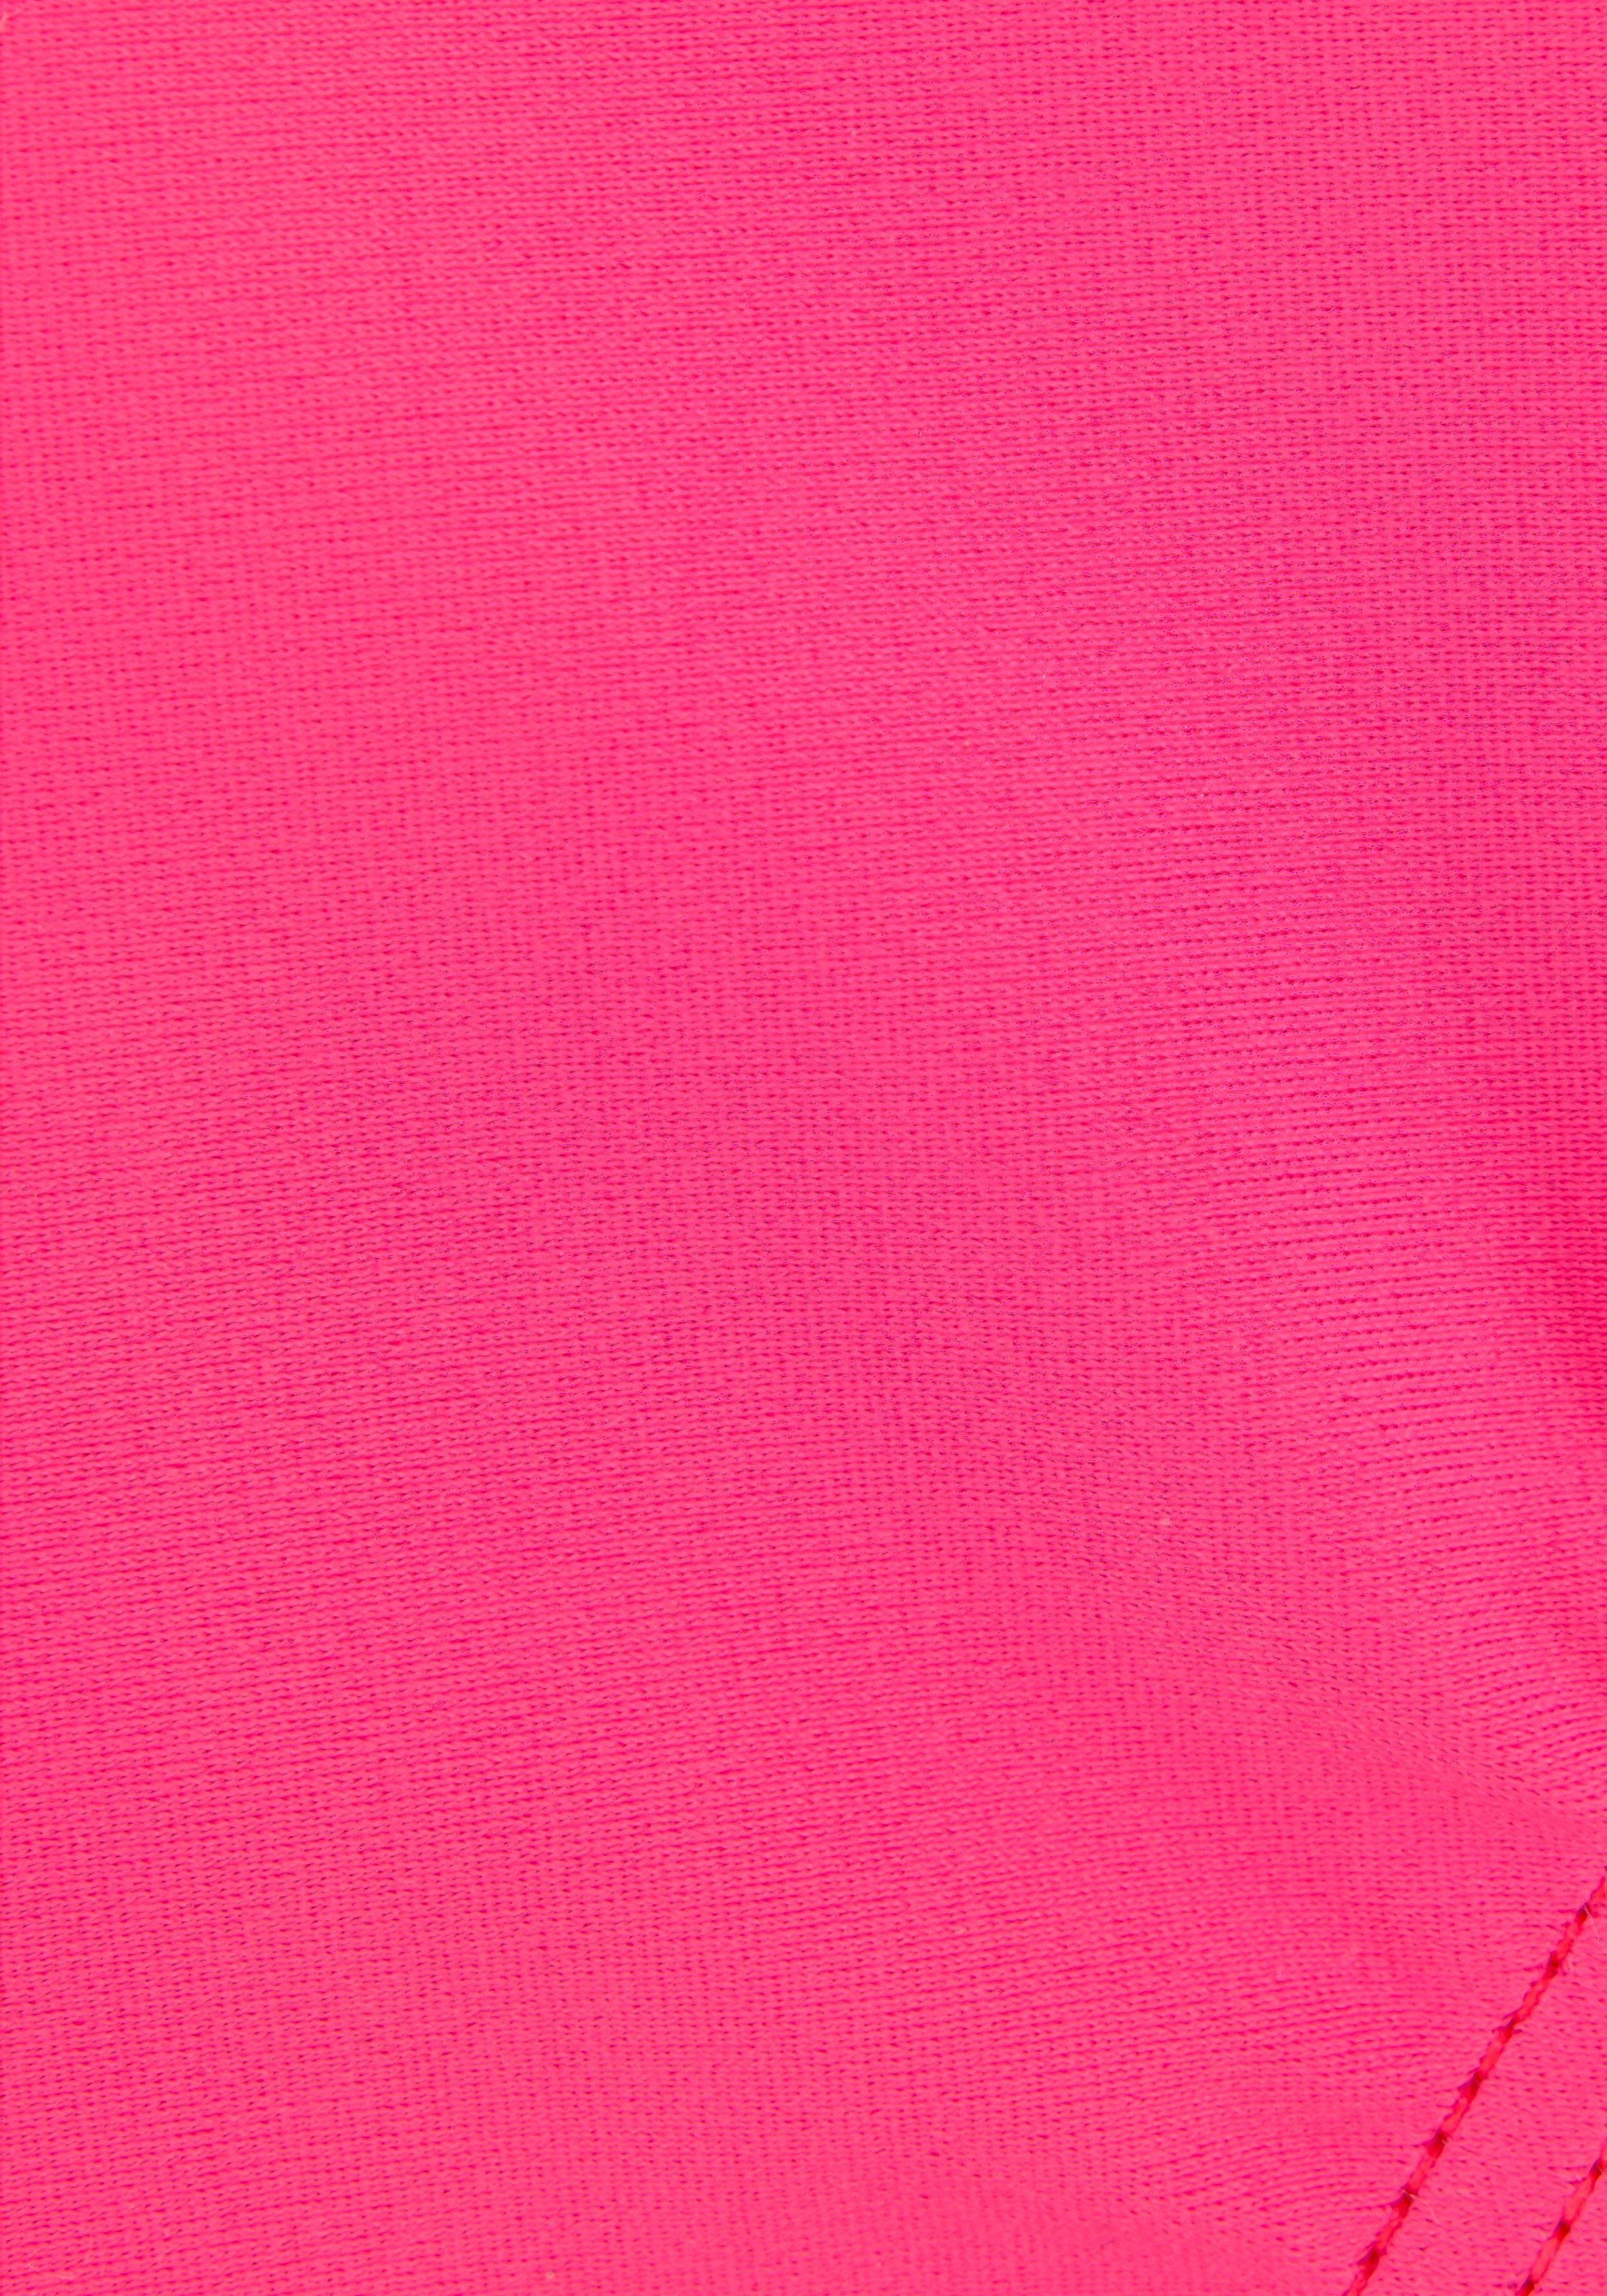 mit Bench. Logoprint pink-schwarz Badeanzug